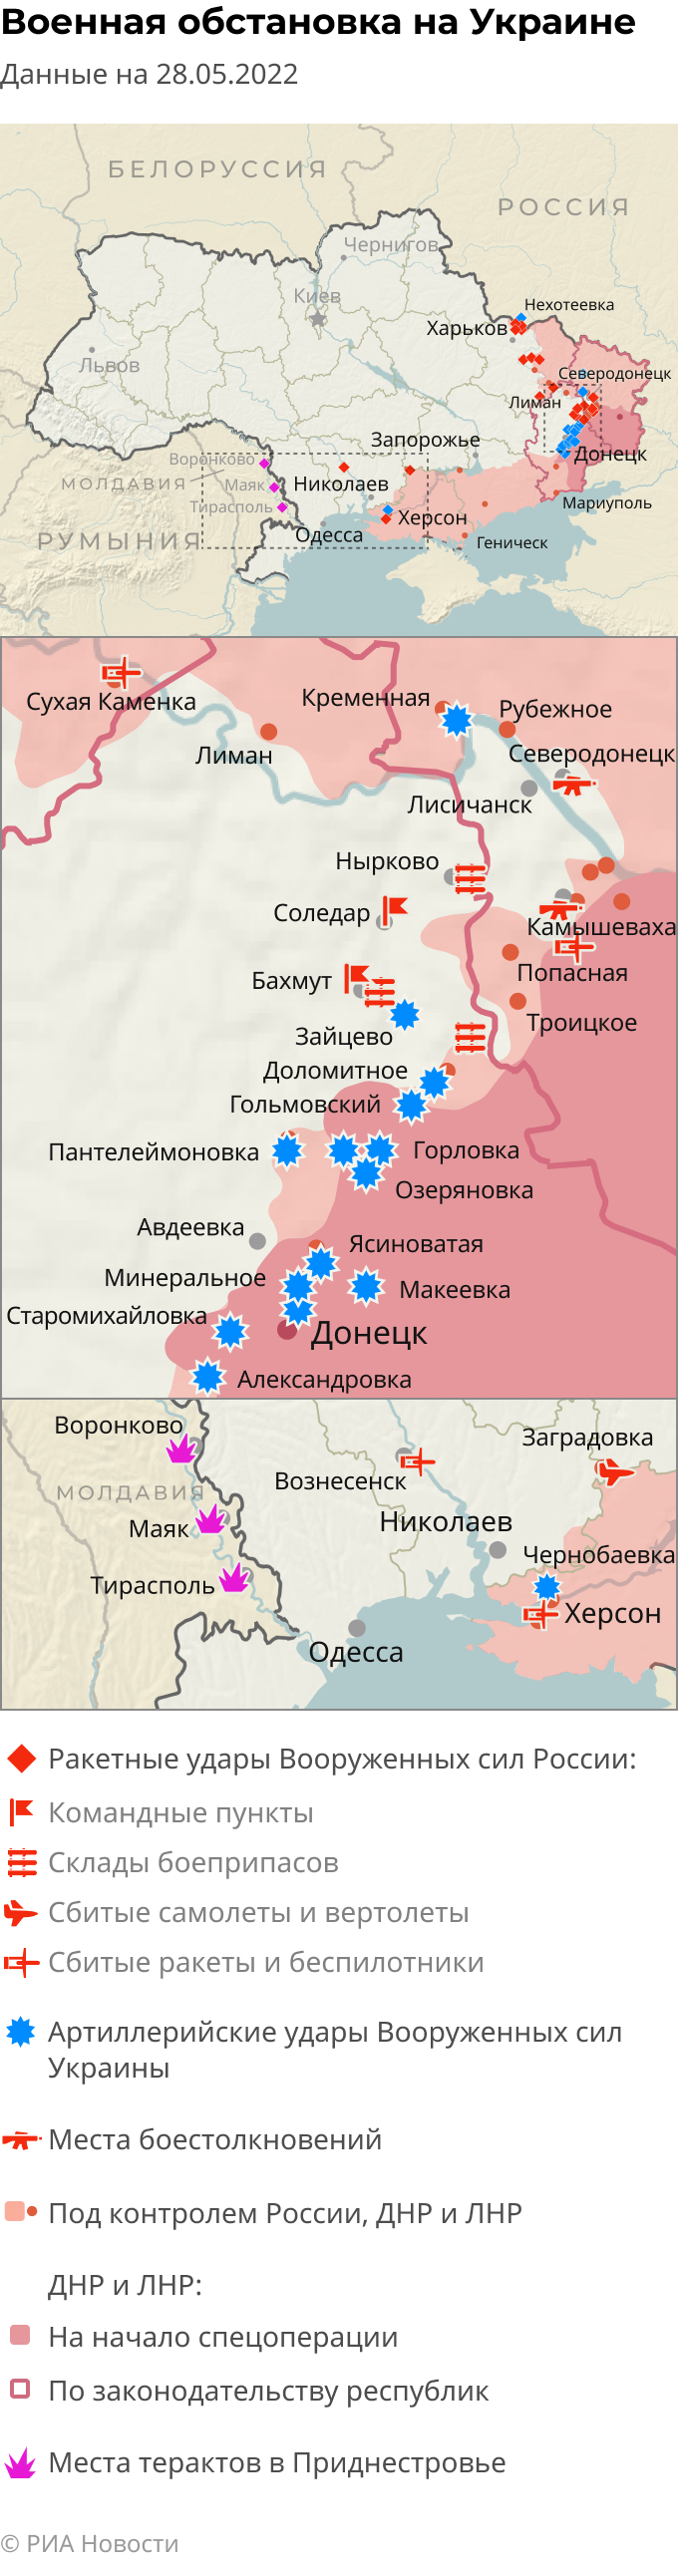 Карта боевых действий на украине сейчас военная спецоперация на сегодня